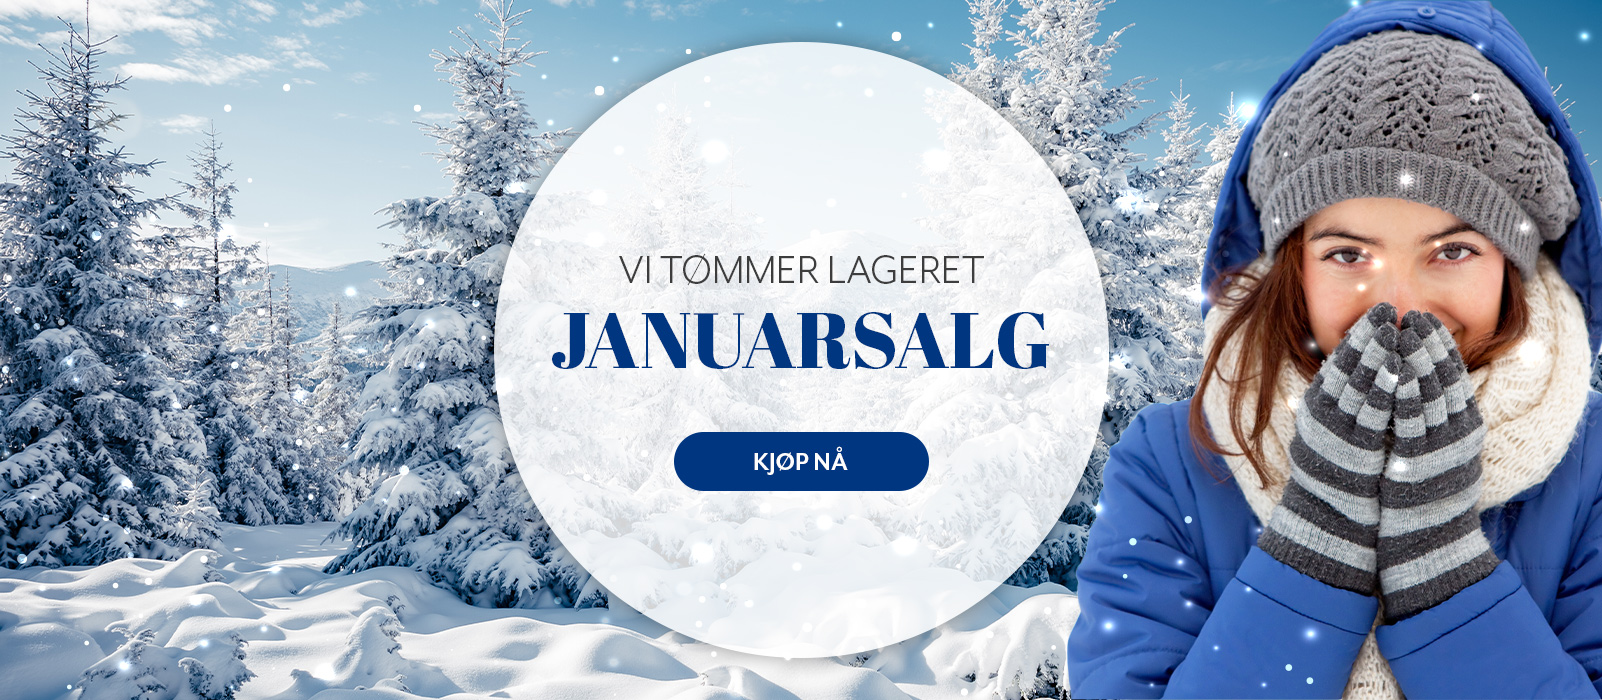 Dette er første arbeidsdag etter nyttår og årets første skikkelige salgsperiode kan starte. Januarsalget står sterkt i Norge og mange venter til etter jul for å handle billige varer på nett. Mange forbrukere forventer (les: forlanger) gode tilbud i denne perioden, så her er det bare å henge seg på.